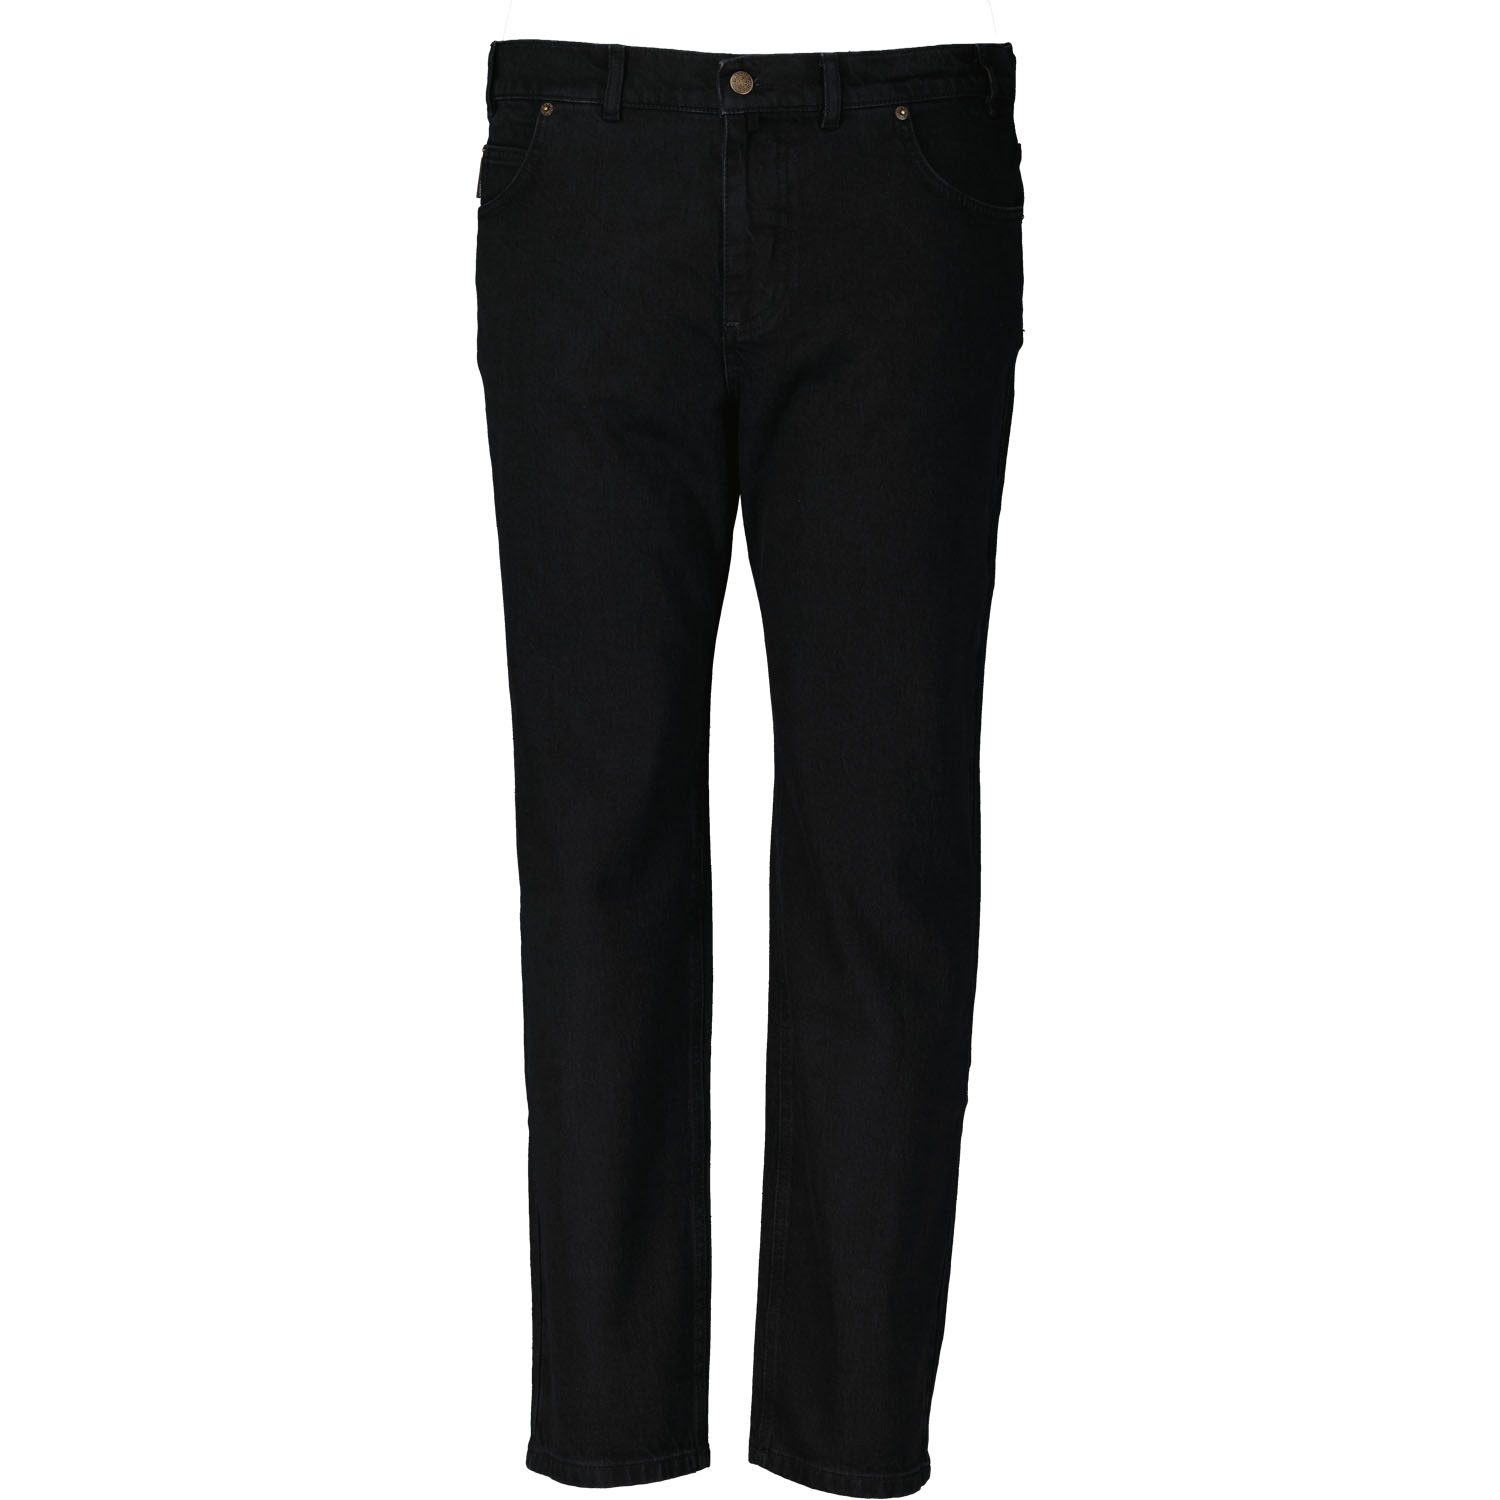 Schwarze 5-Pocket Jeans lang mit Stretch von Adamo für Herren Serie "NEVADA" in Übergrößen 56 - 80